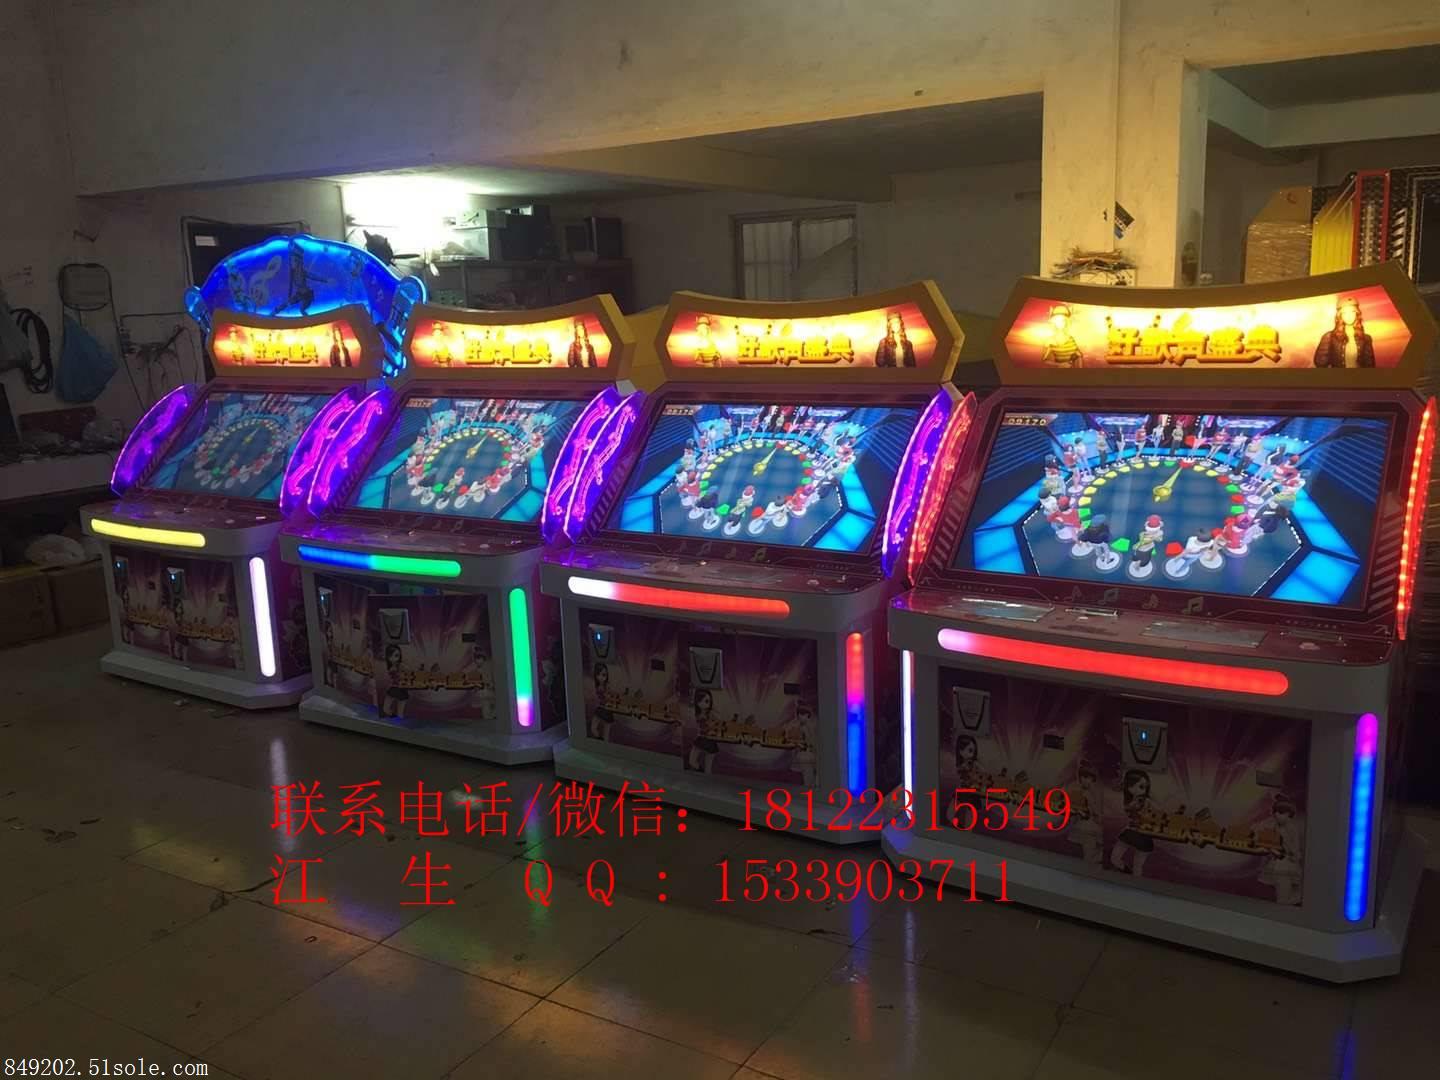 北三省热门机器文化部审批好歌声盛典游戏机多